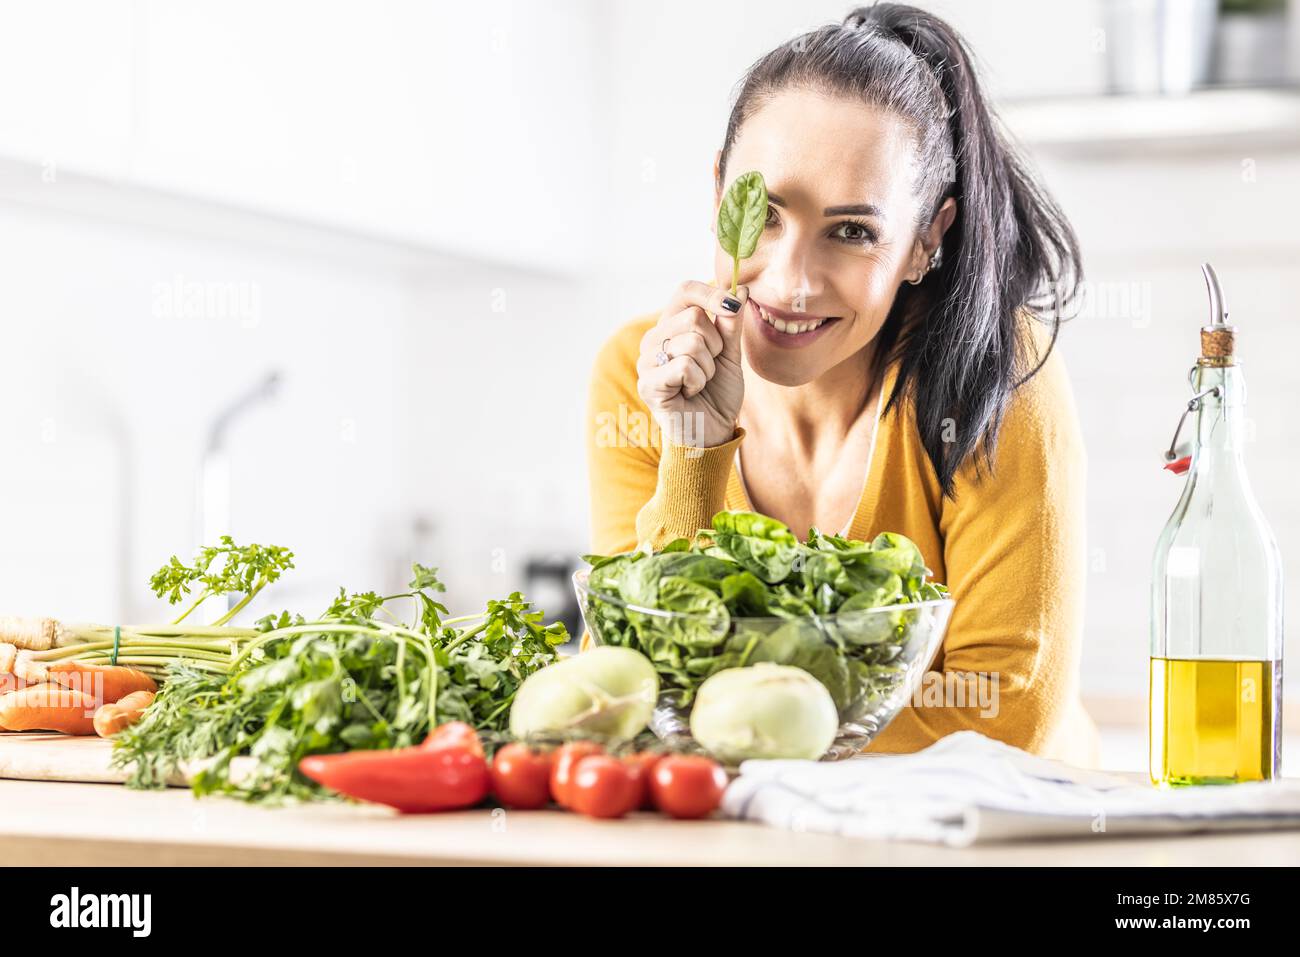 Nette junge Frau, die ein Spinatblatt hält, ihr Auge bedeckt, lächelt, frisches Gemüse auf dem Tisch neben ihr. Stockfoto